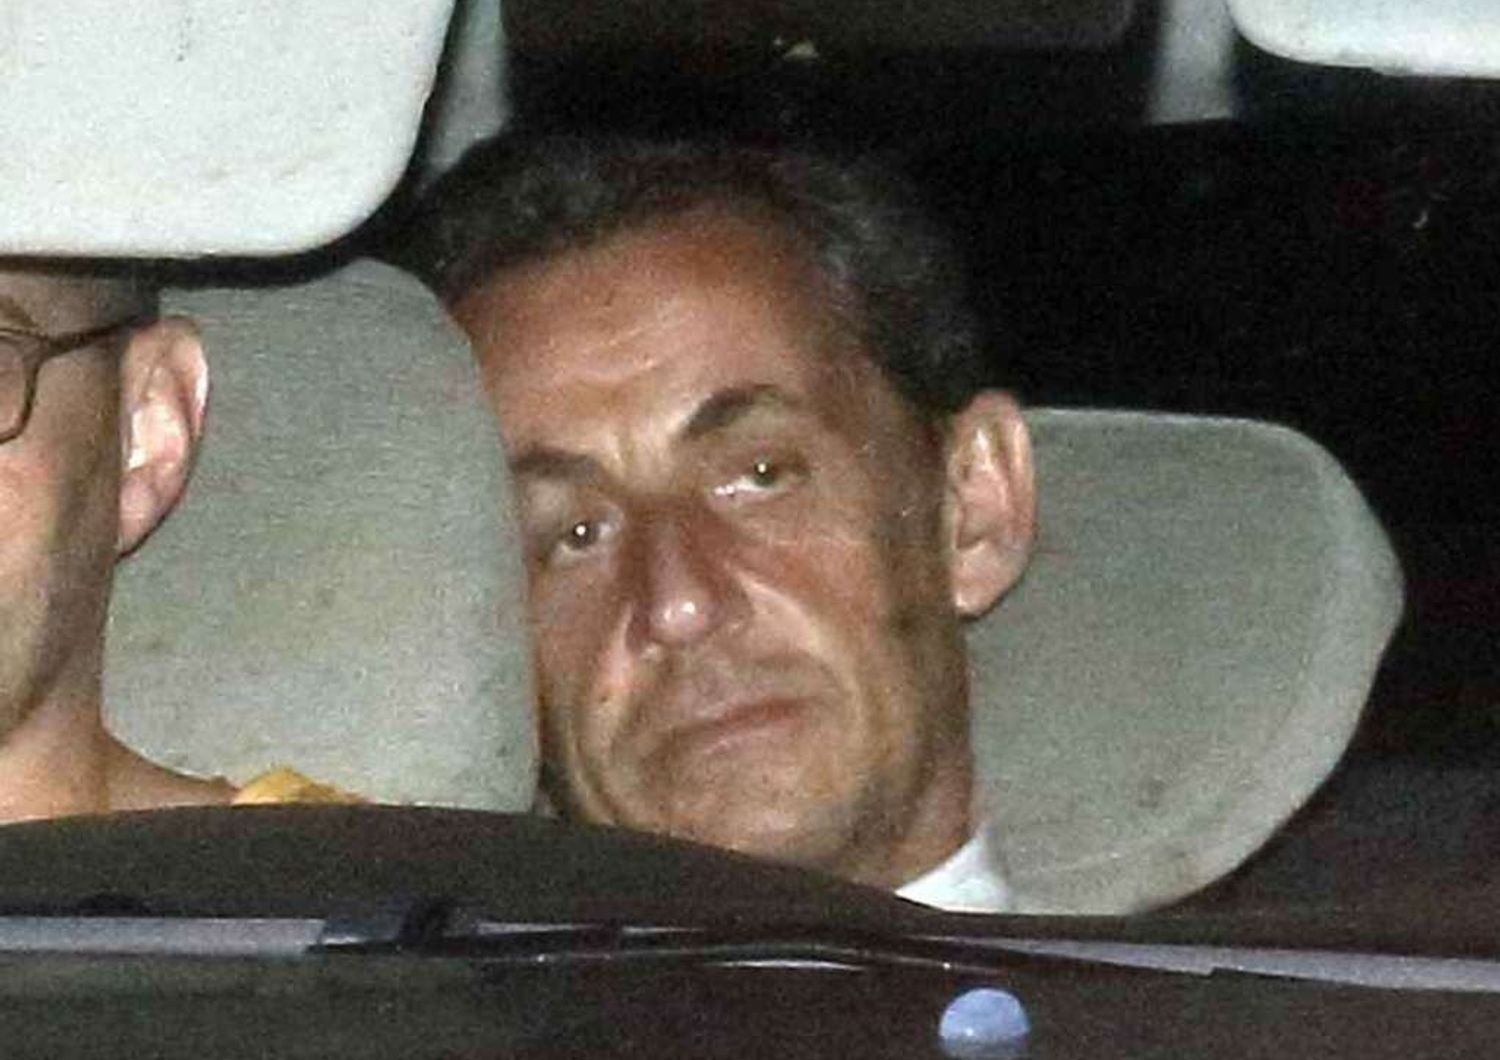 Sarkozy incriminato stasera in tv, a rischio suo futuro politico